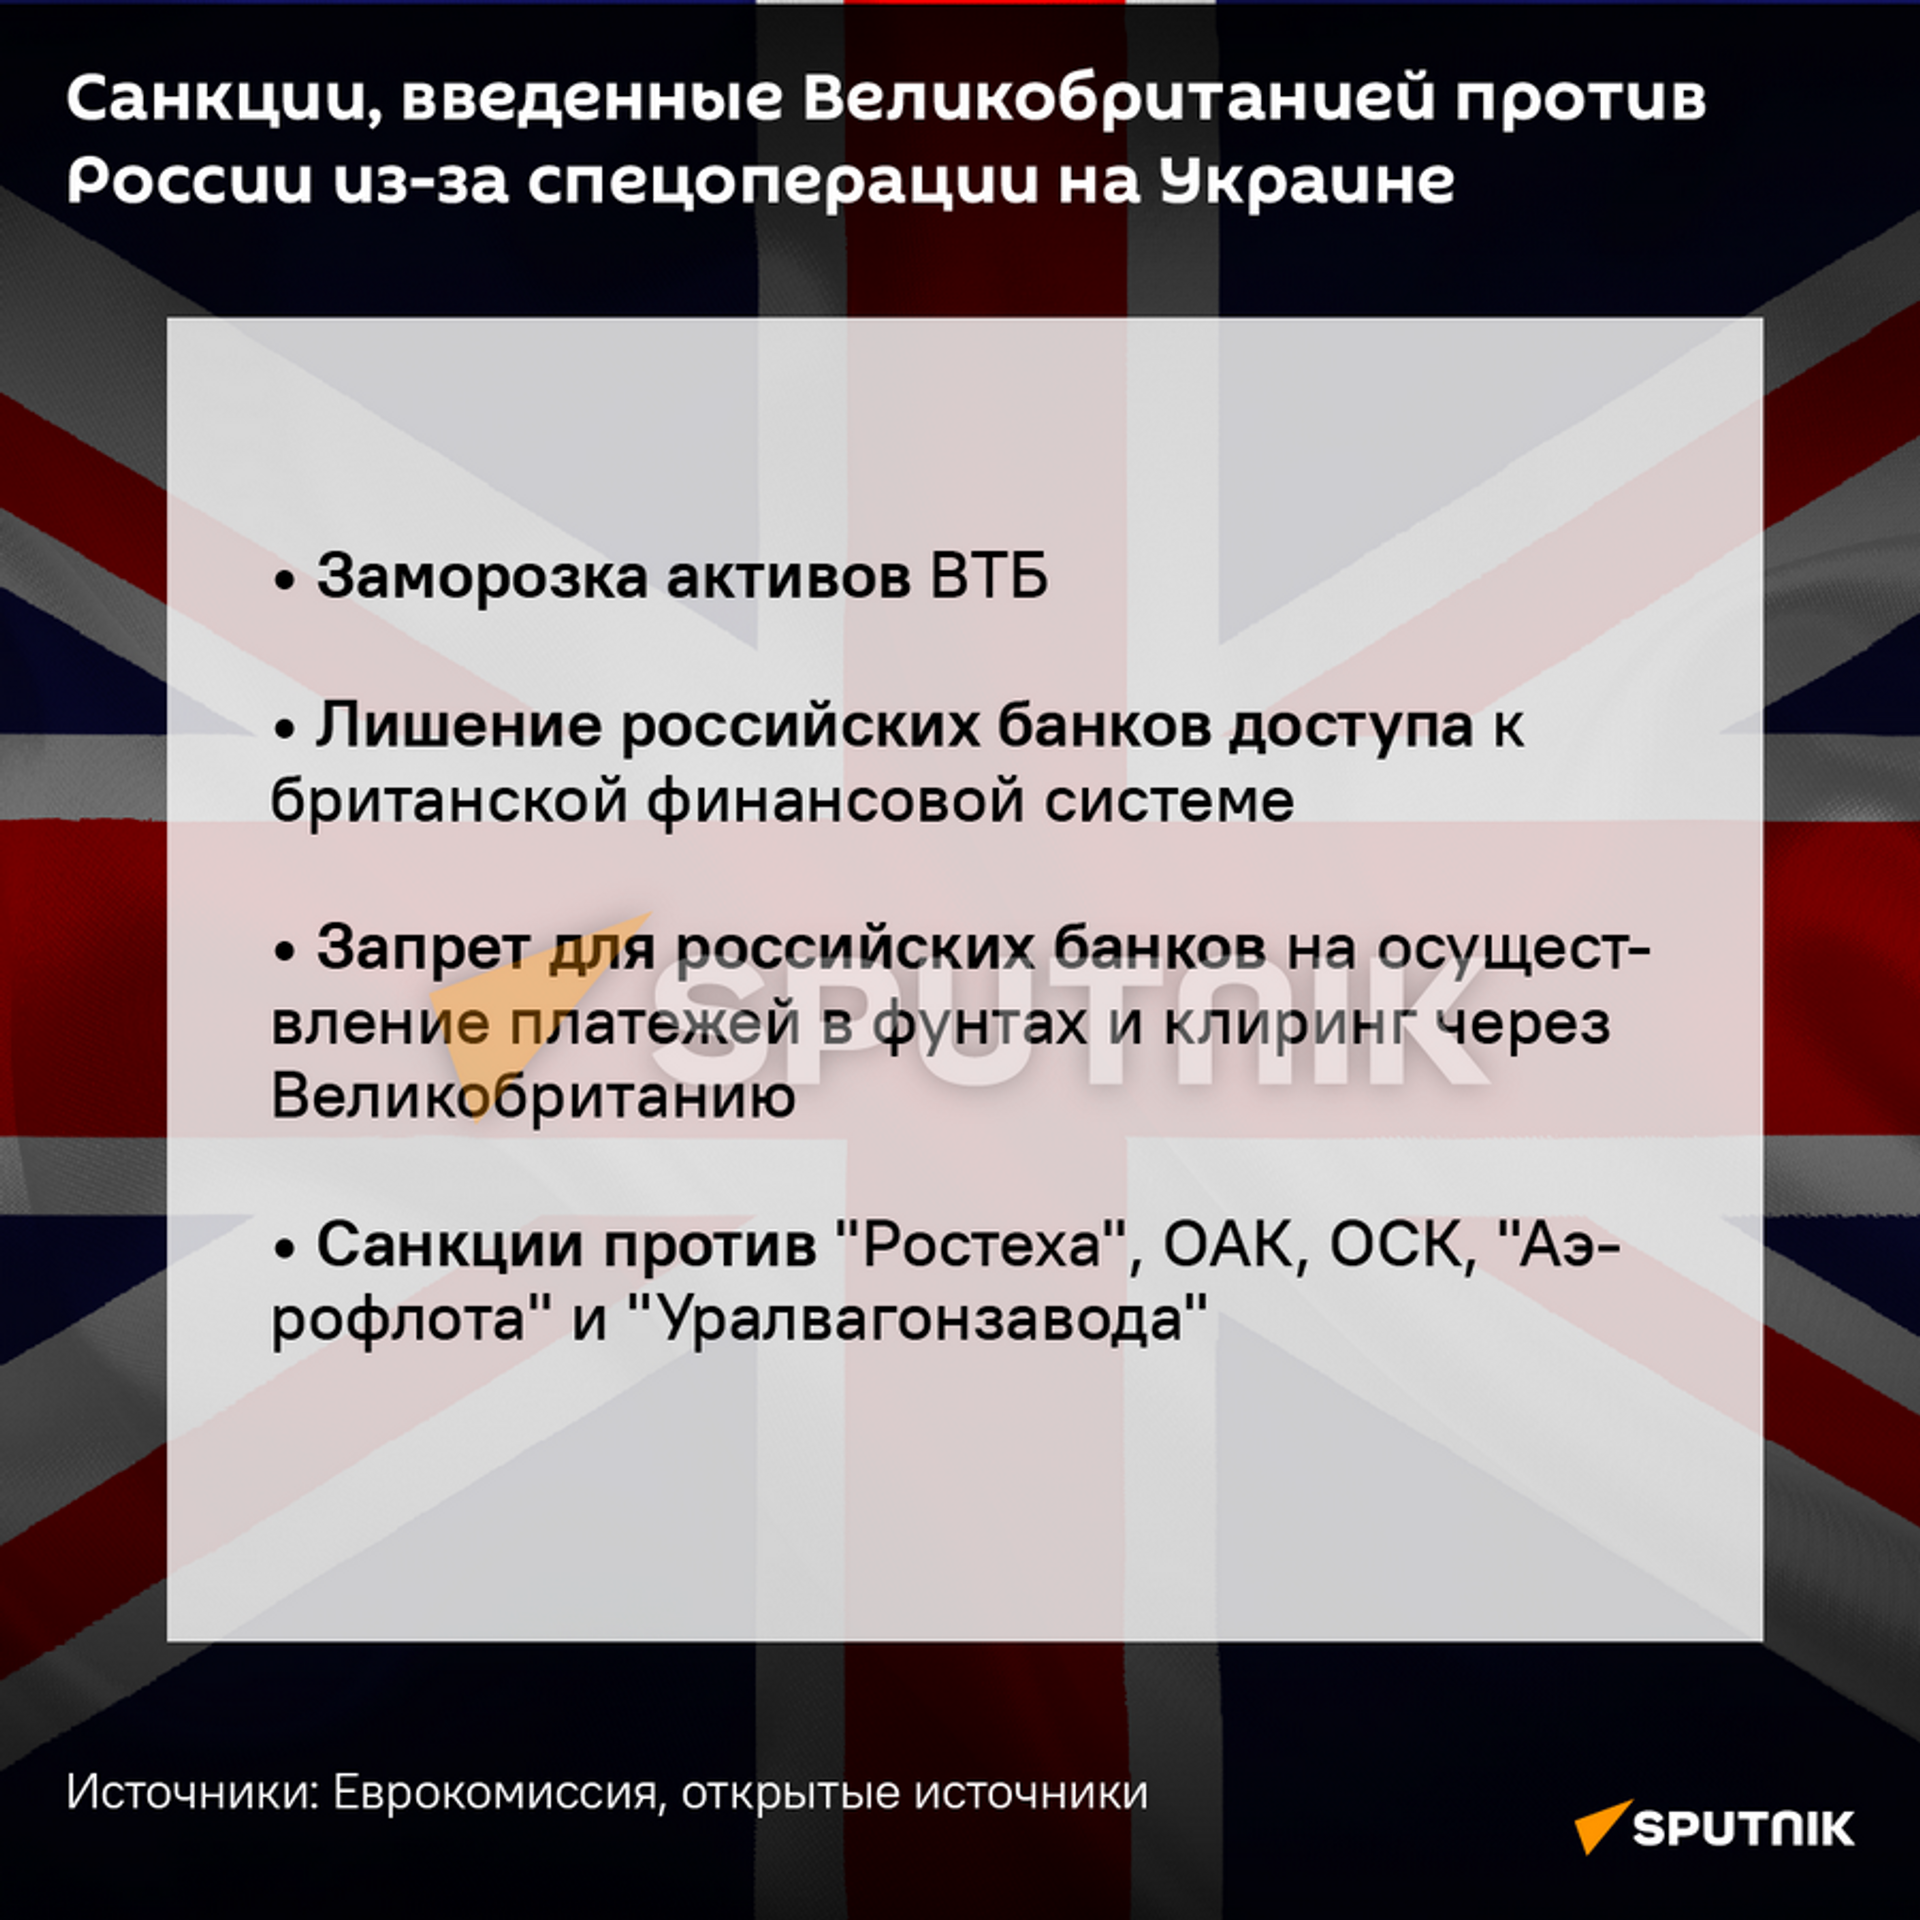 Санкции Великобритании в отношении России - Sputnik Беларусь, 1920, 26.02.2022